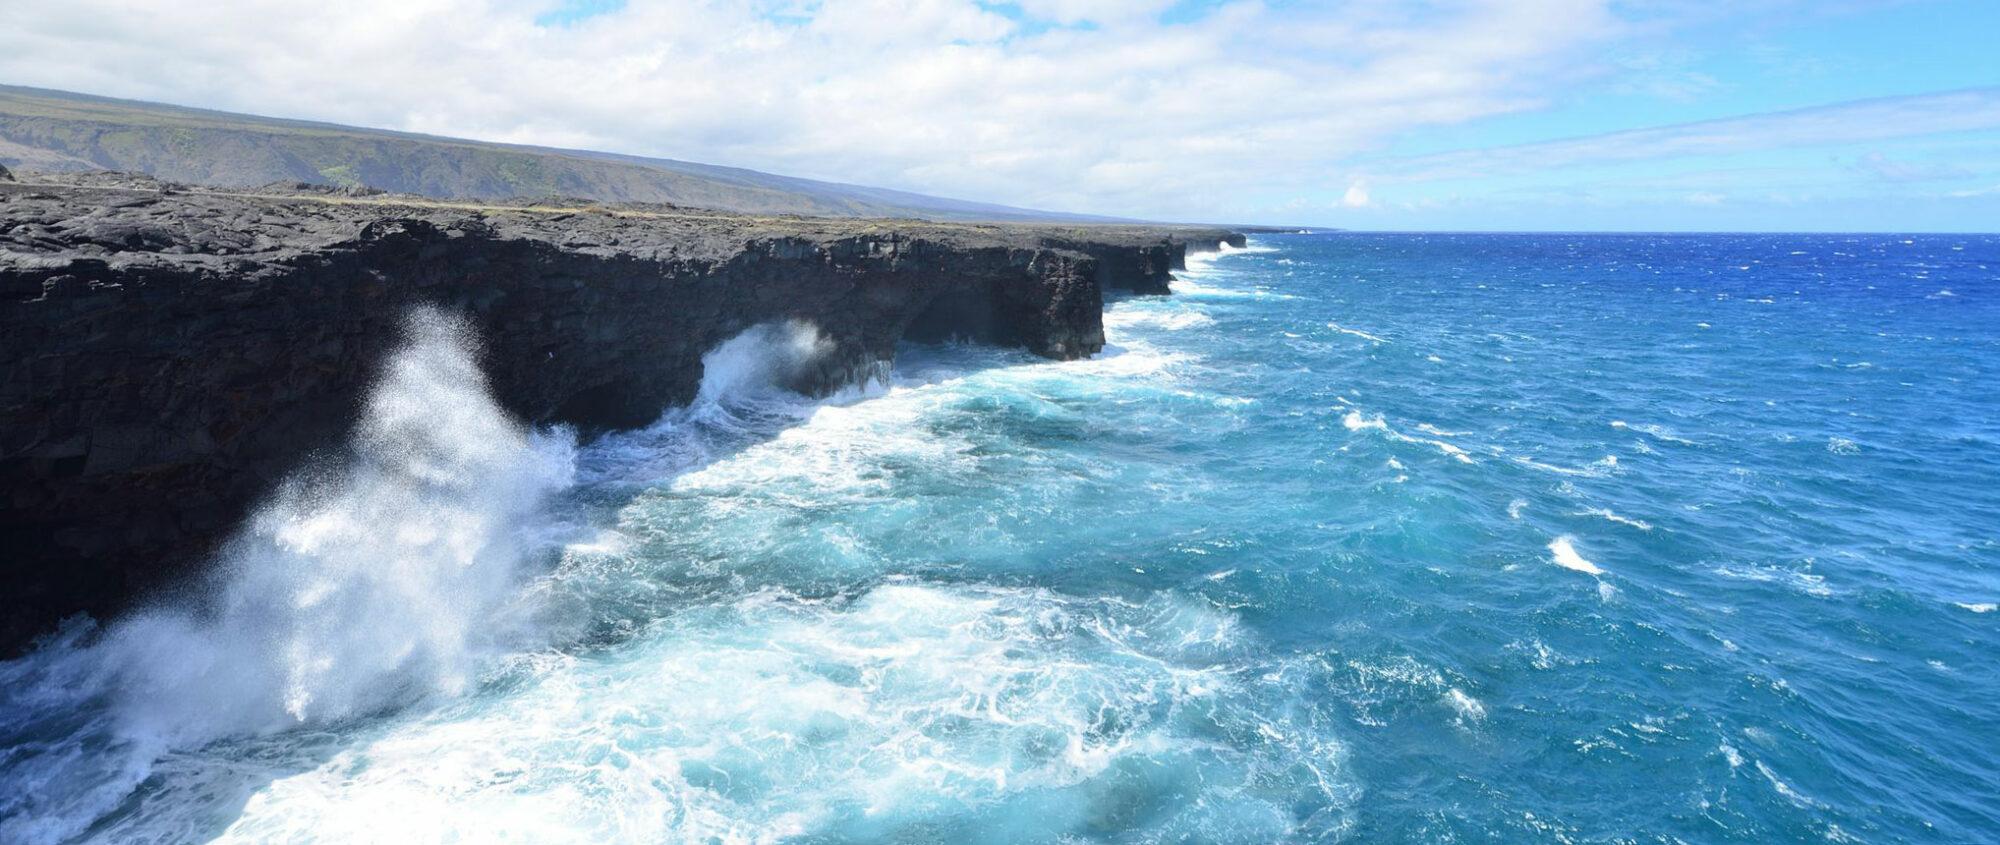 photo of sheer cliffside of Hawaii